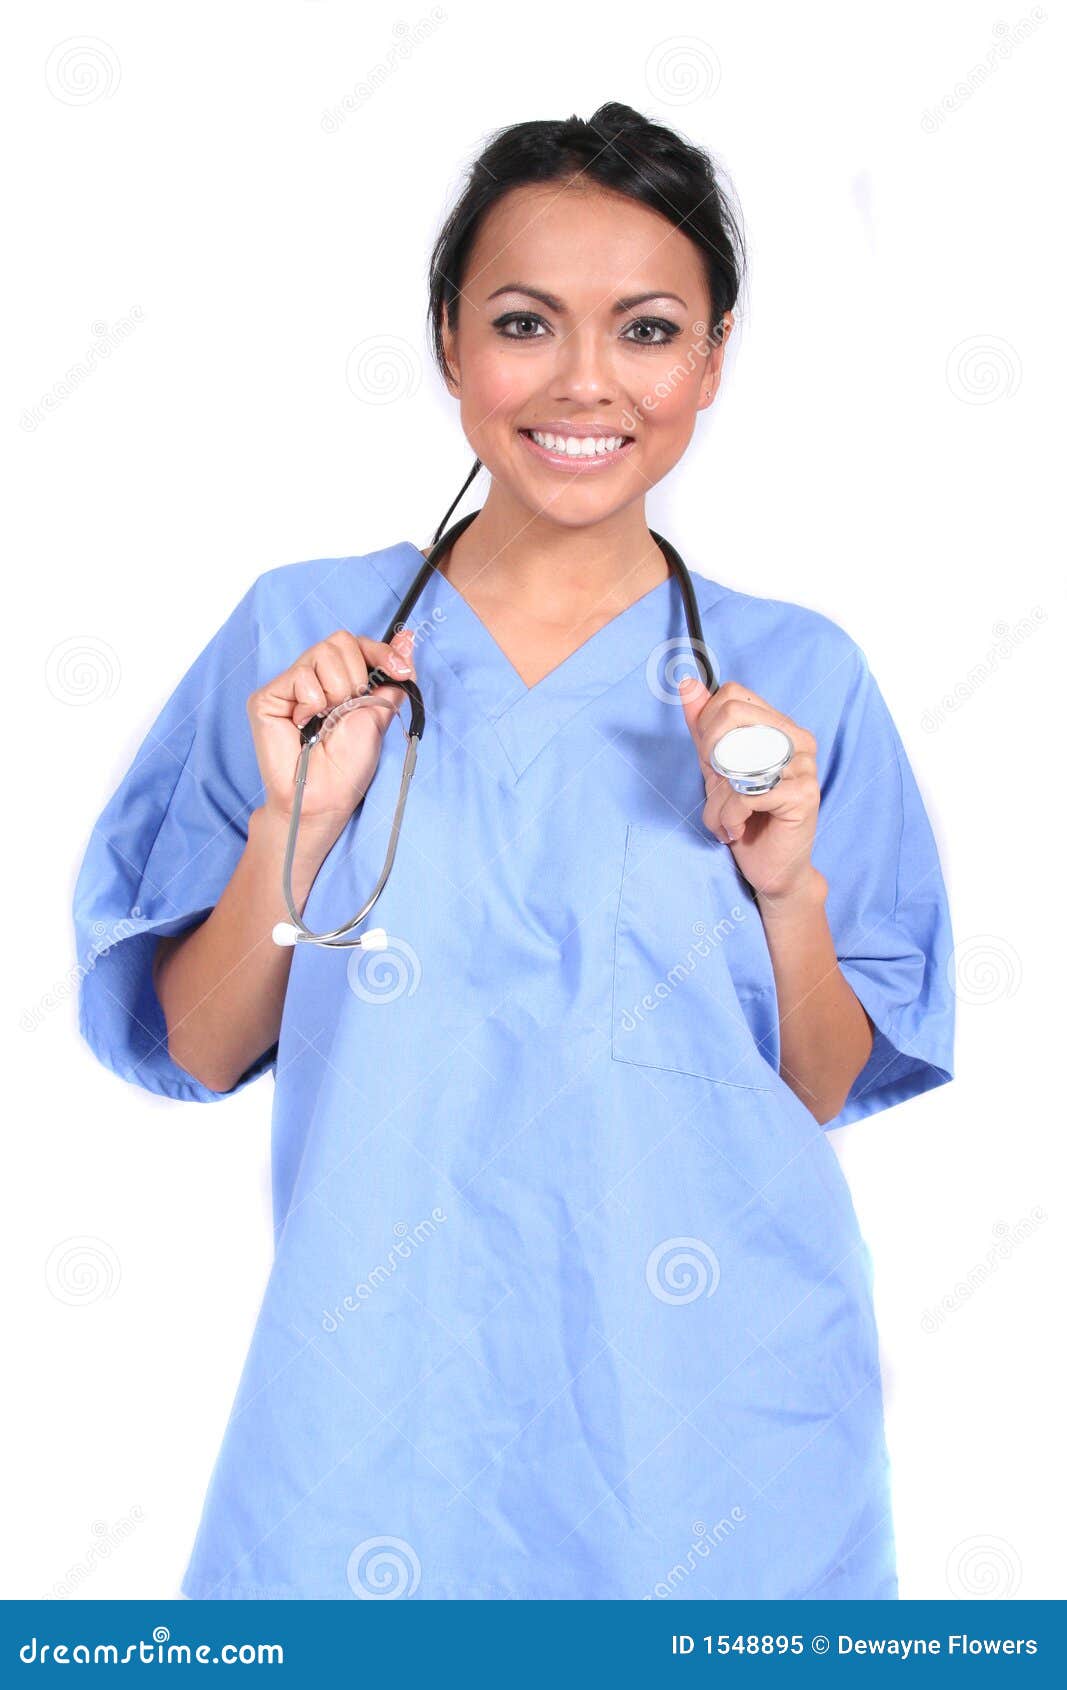 https://thumbs.dreamstime.com/z/cute-female-nurse-doctor-medical-worker-1548895.jpg